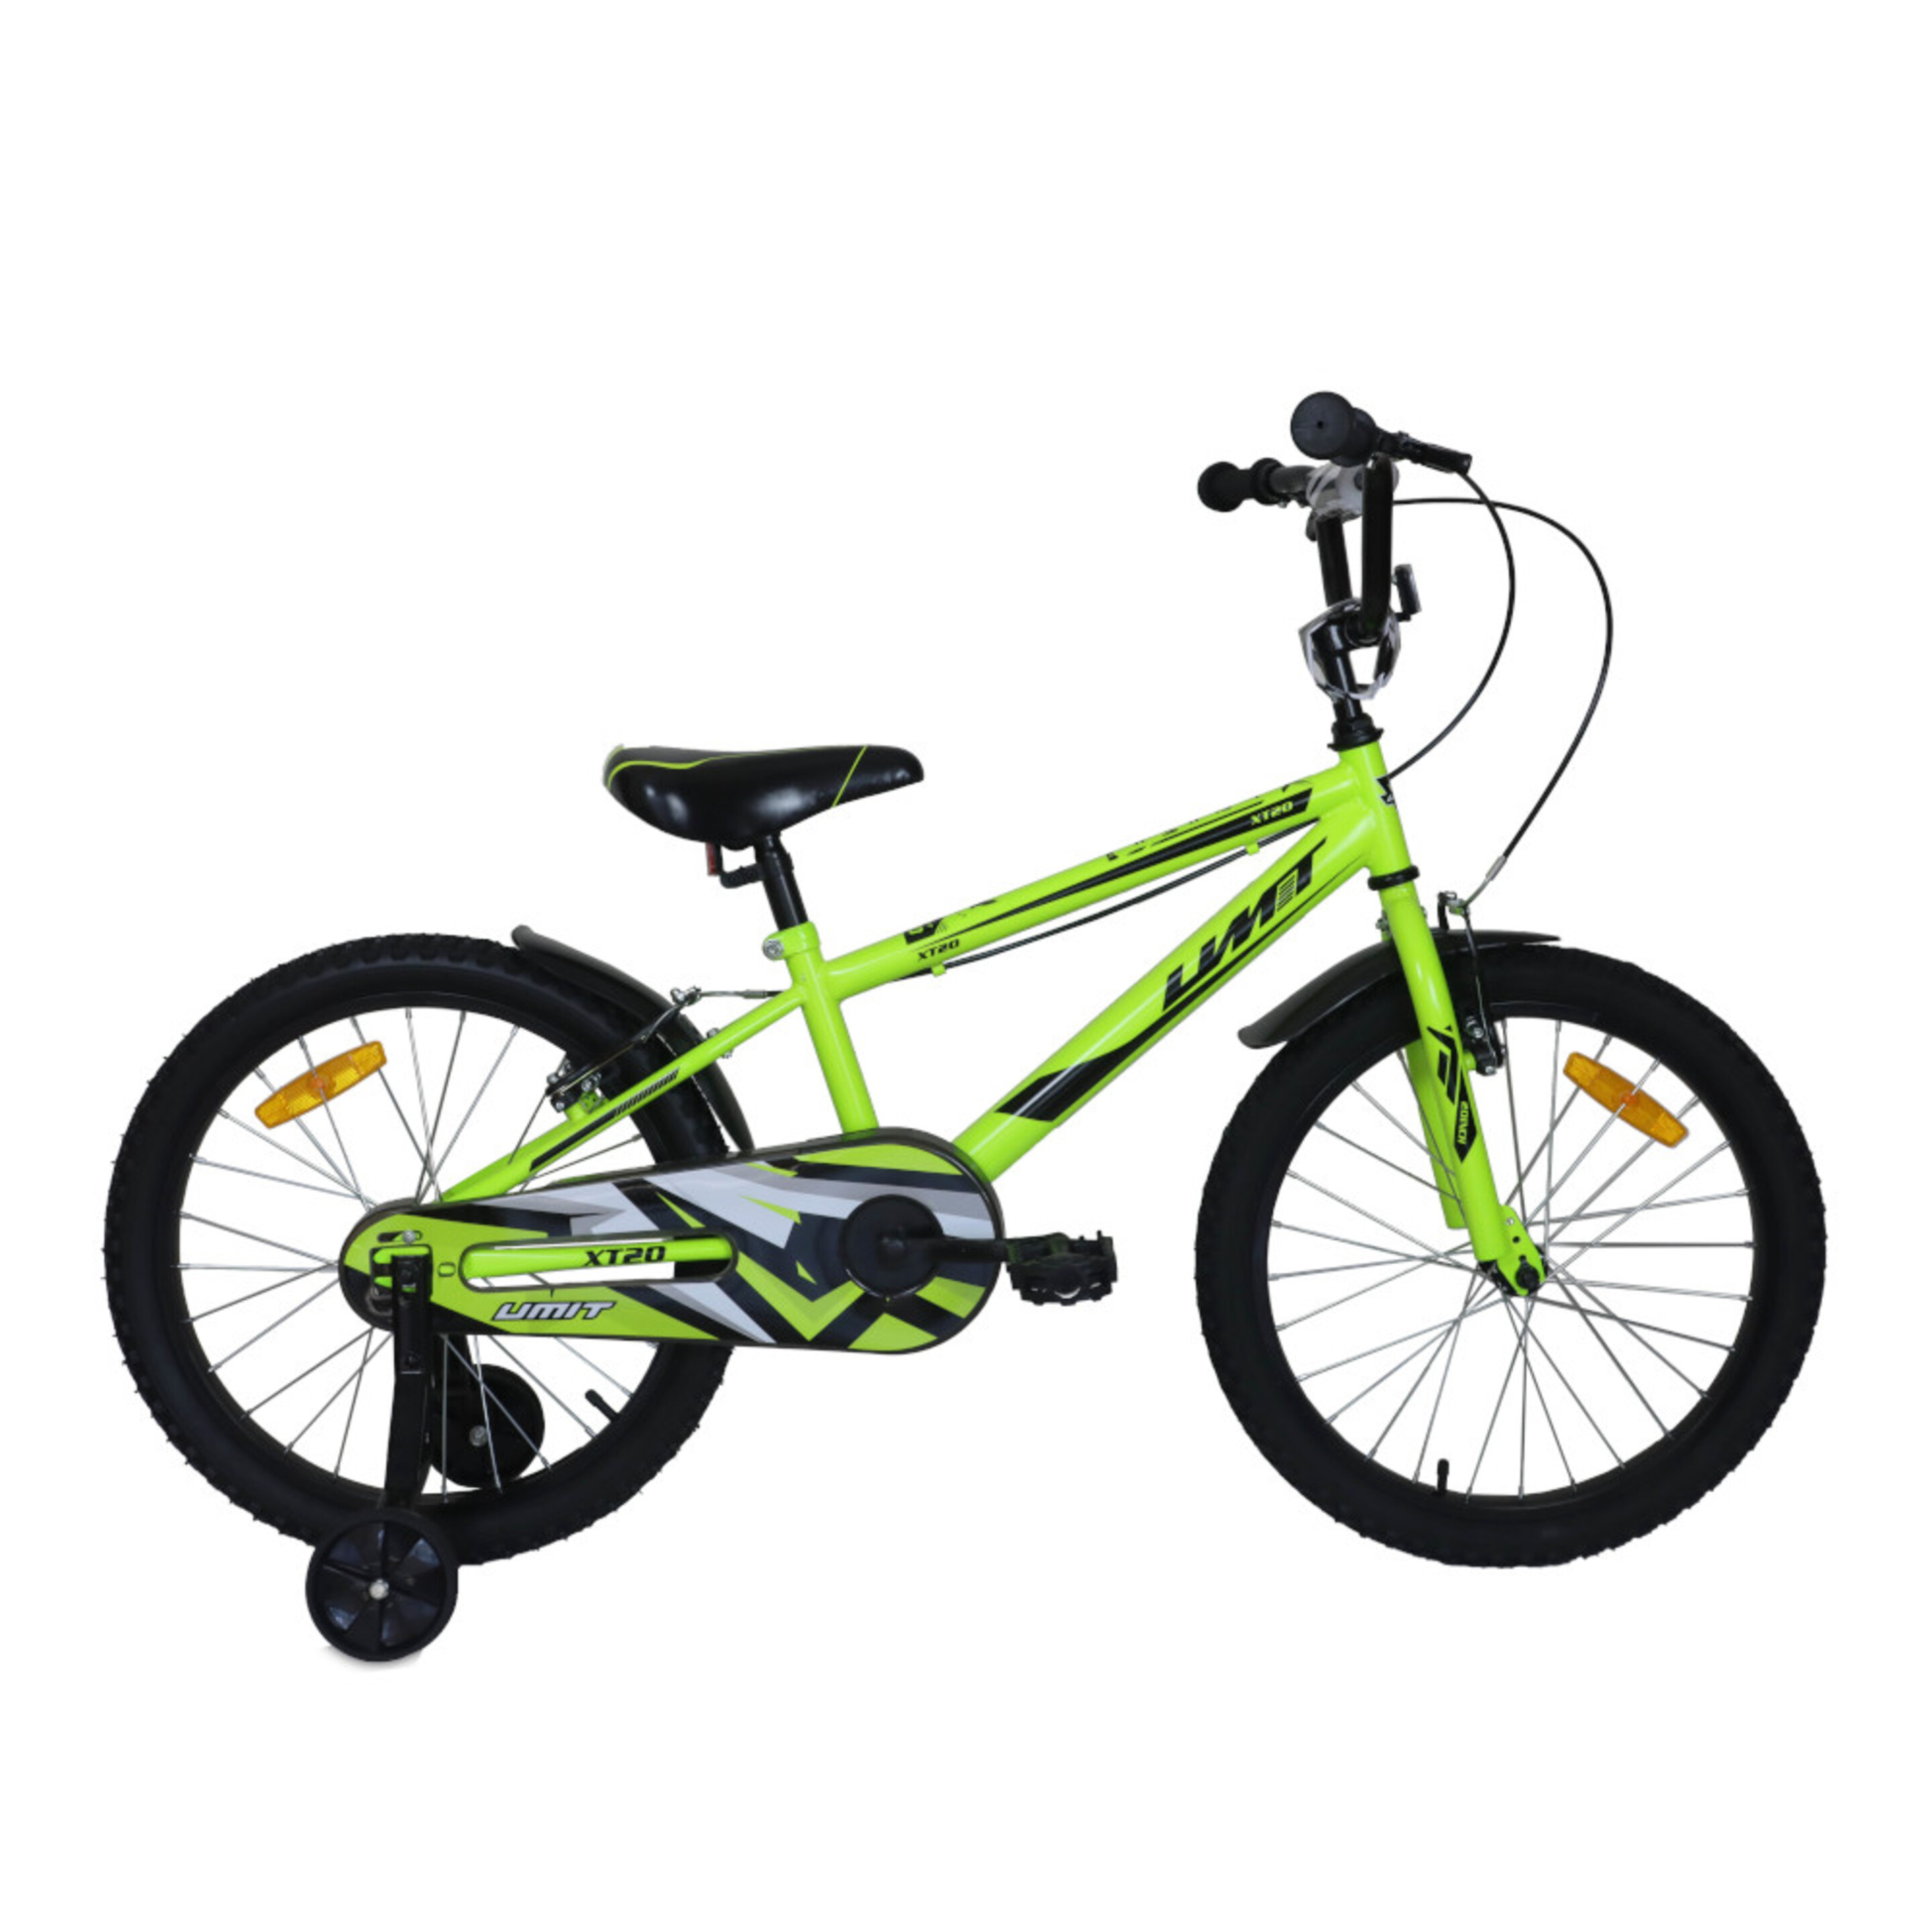 Xt20 Mountain Bike Infantil Verde